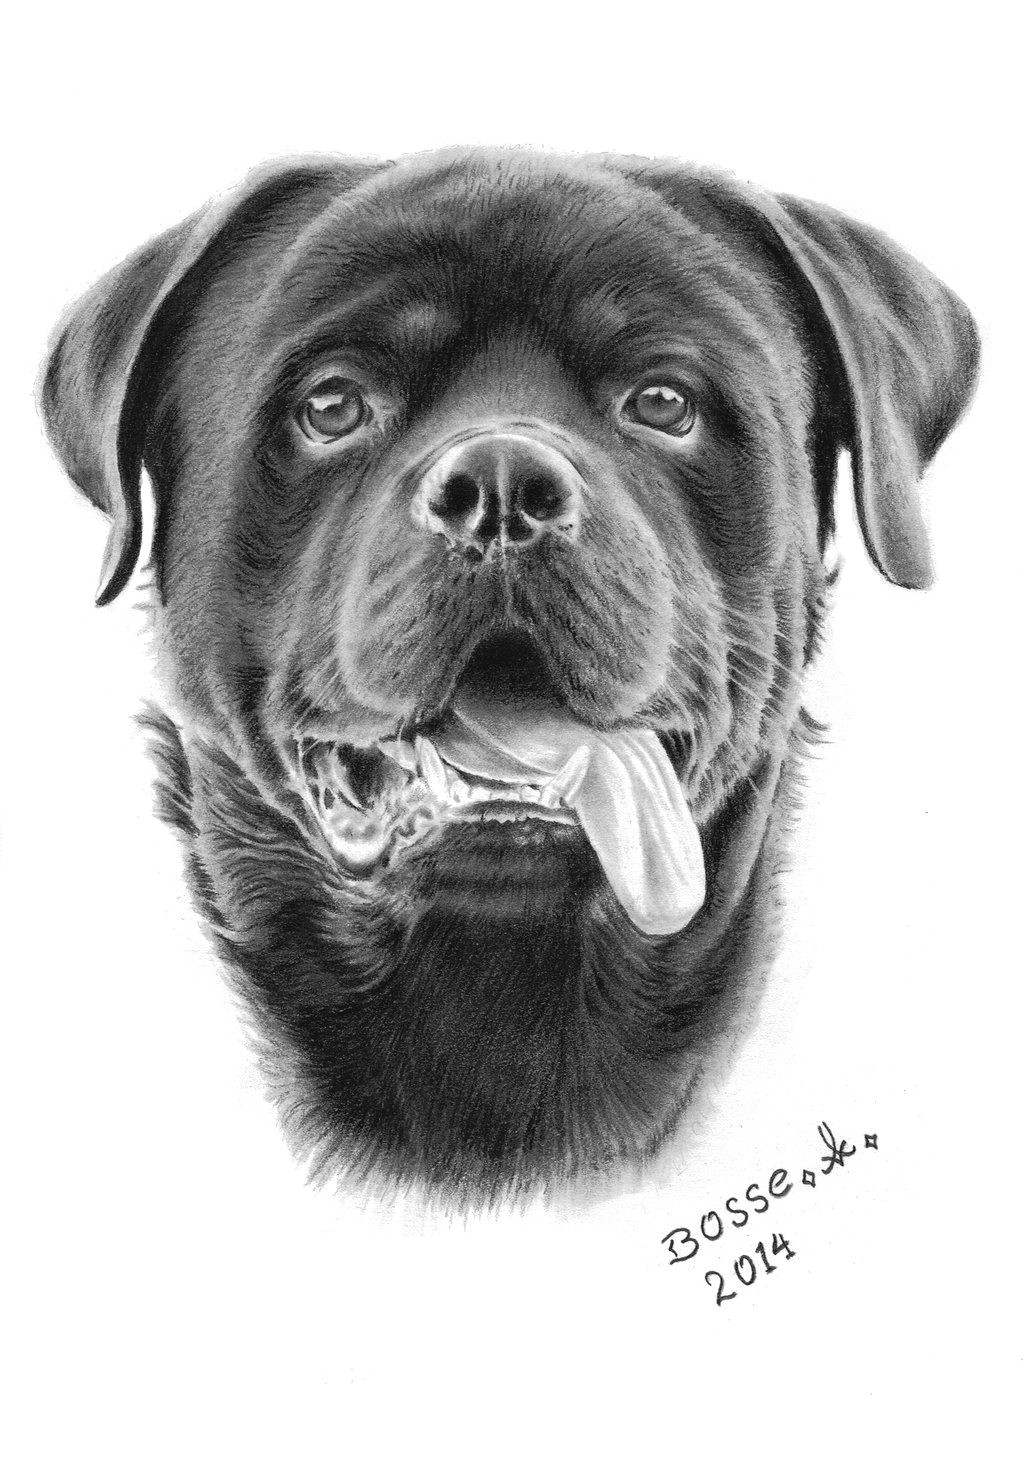 rottweiler 2 by torsk1 on deviantart dog sketches dog artwork rottweiler dog big